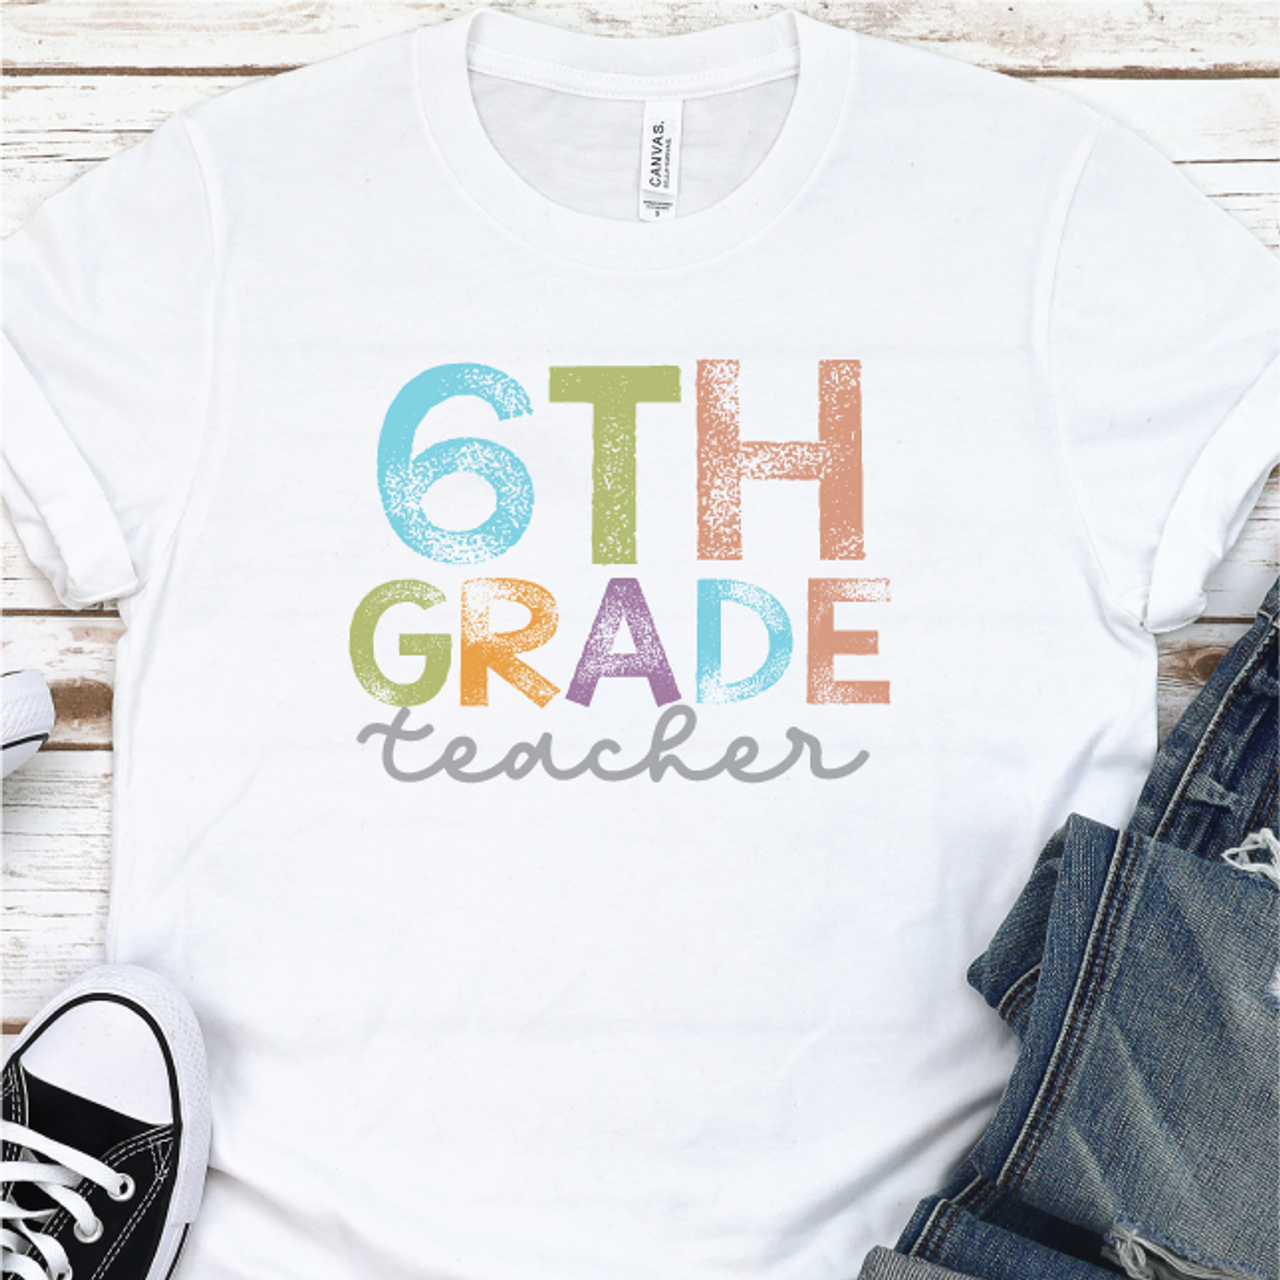 "6th Grade Teacher/Team" T-Shirt